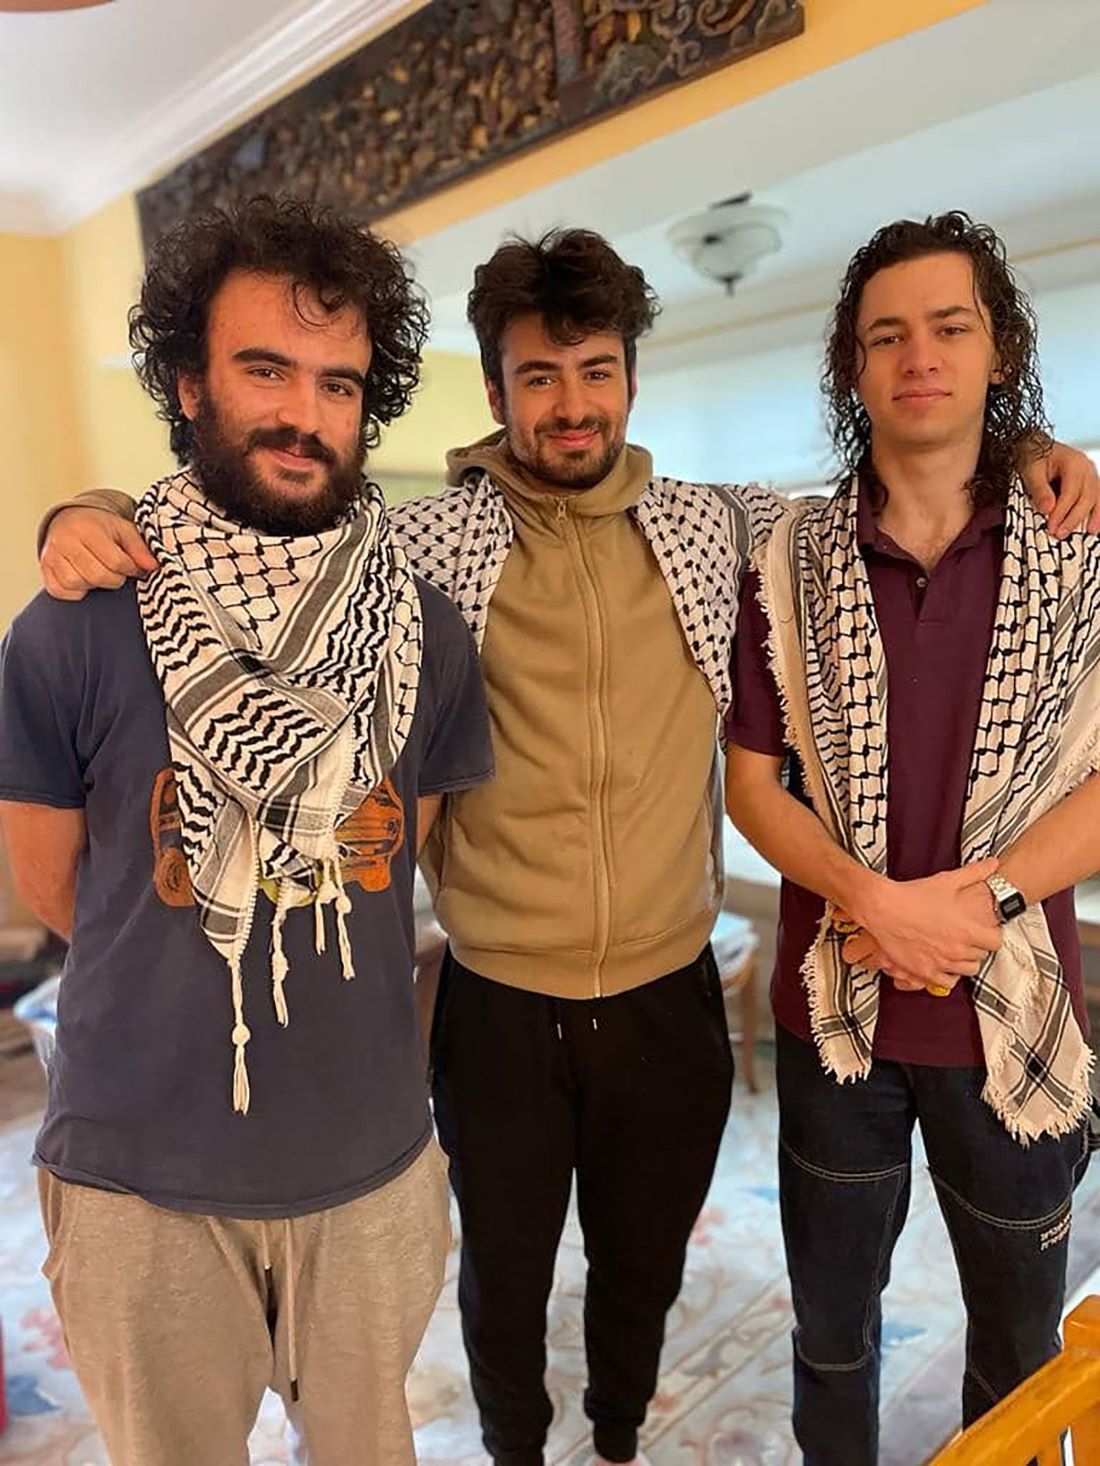 米バーモント州バーリントンでパレスチナ系の学生３人が銃撃されて負傷する事件があった/Institute for Middle East Understanding